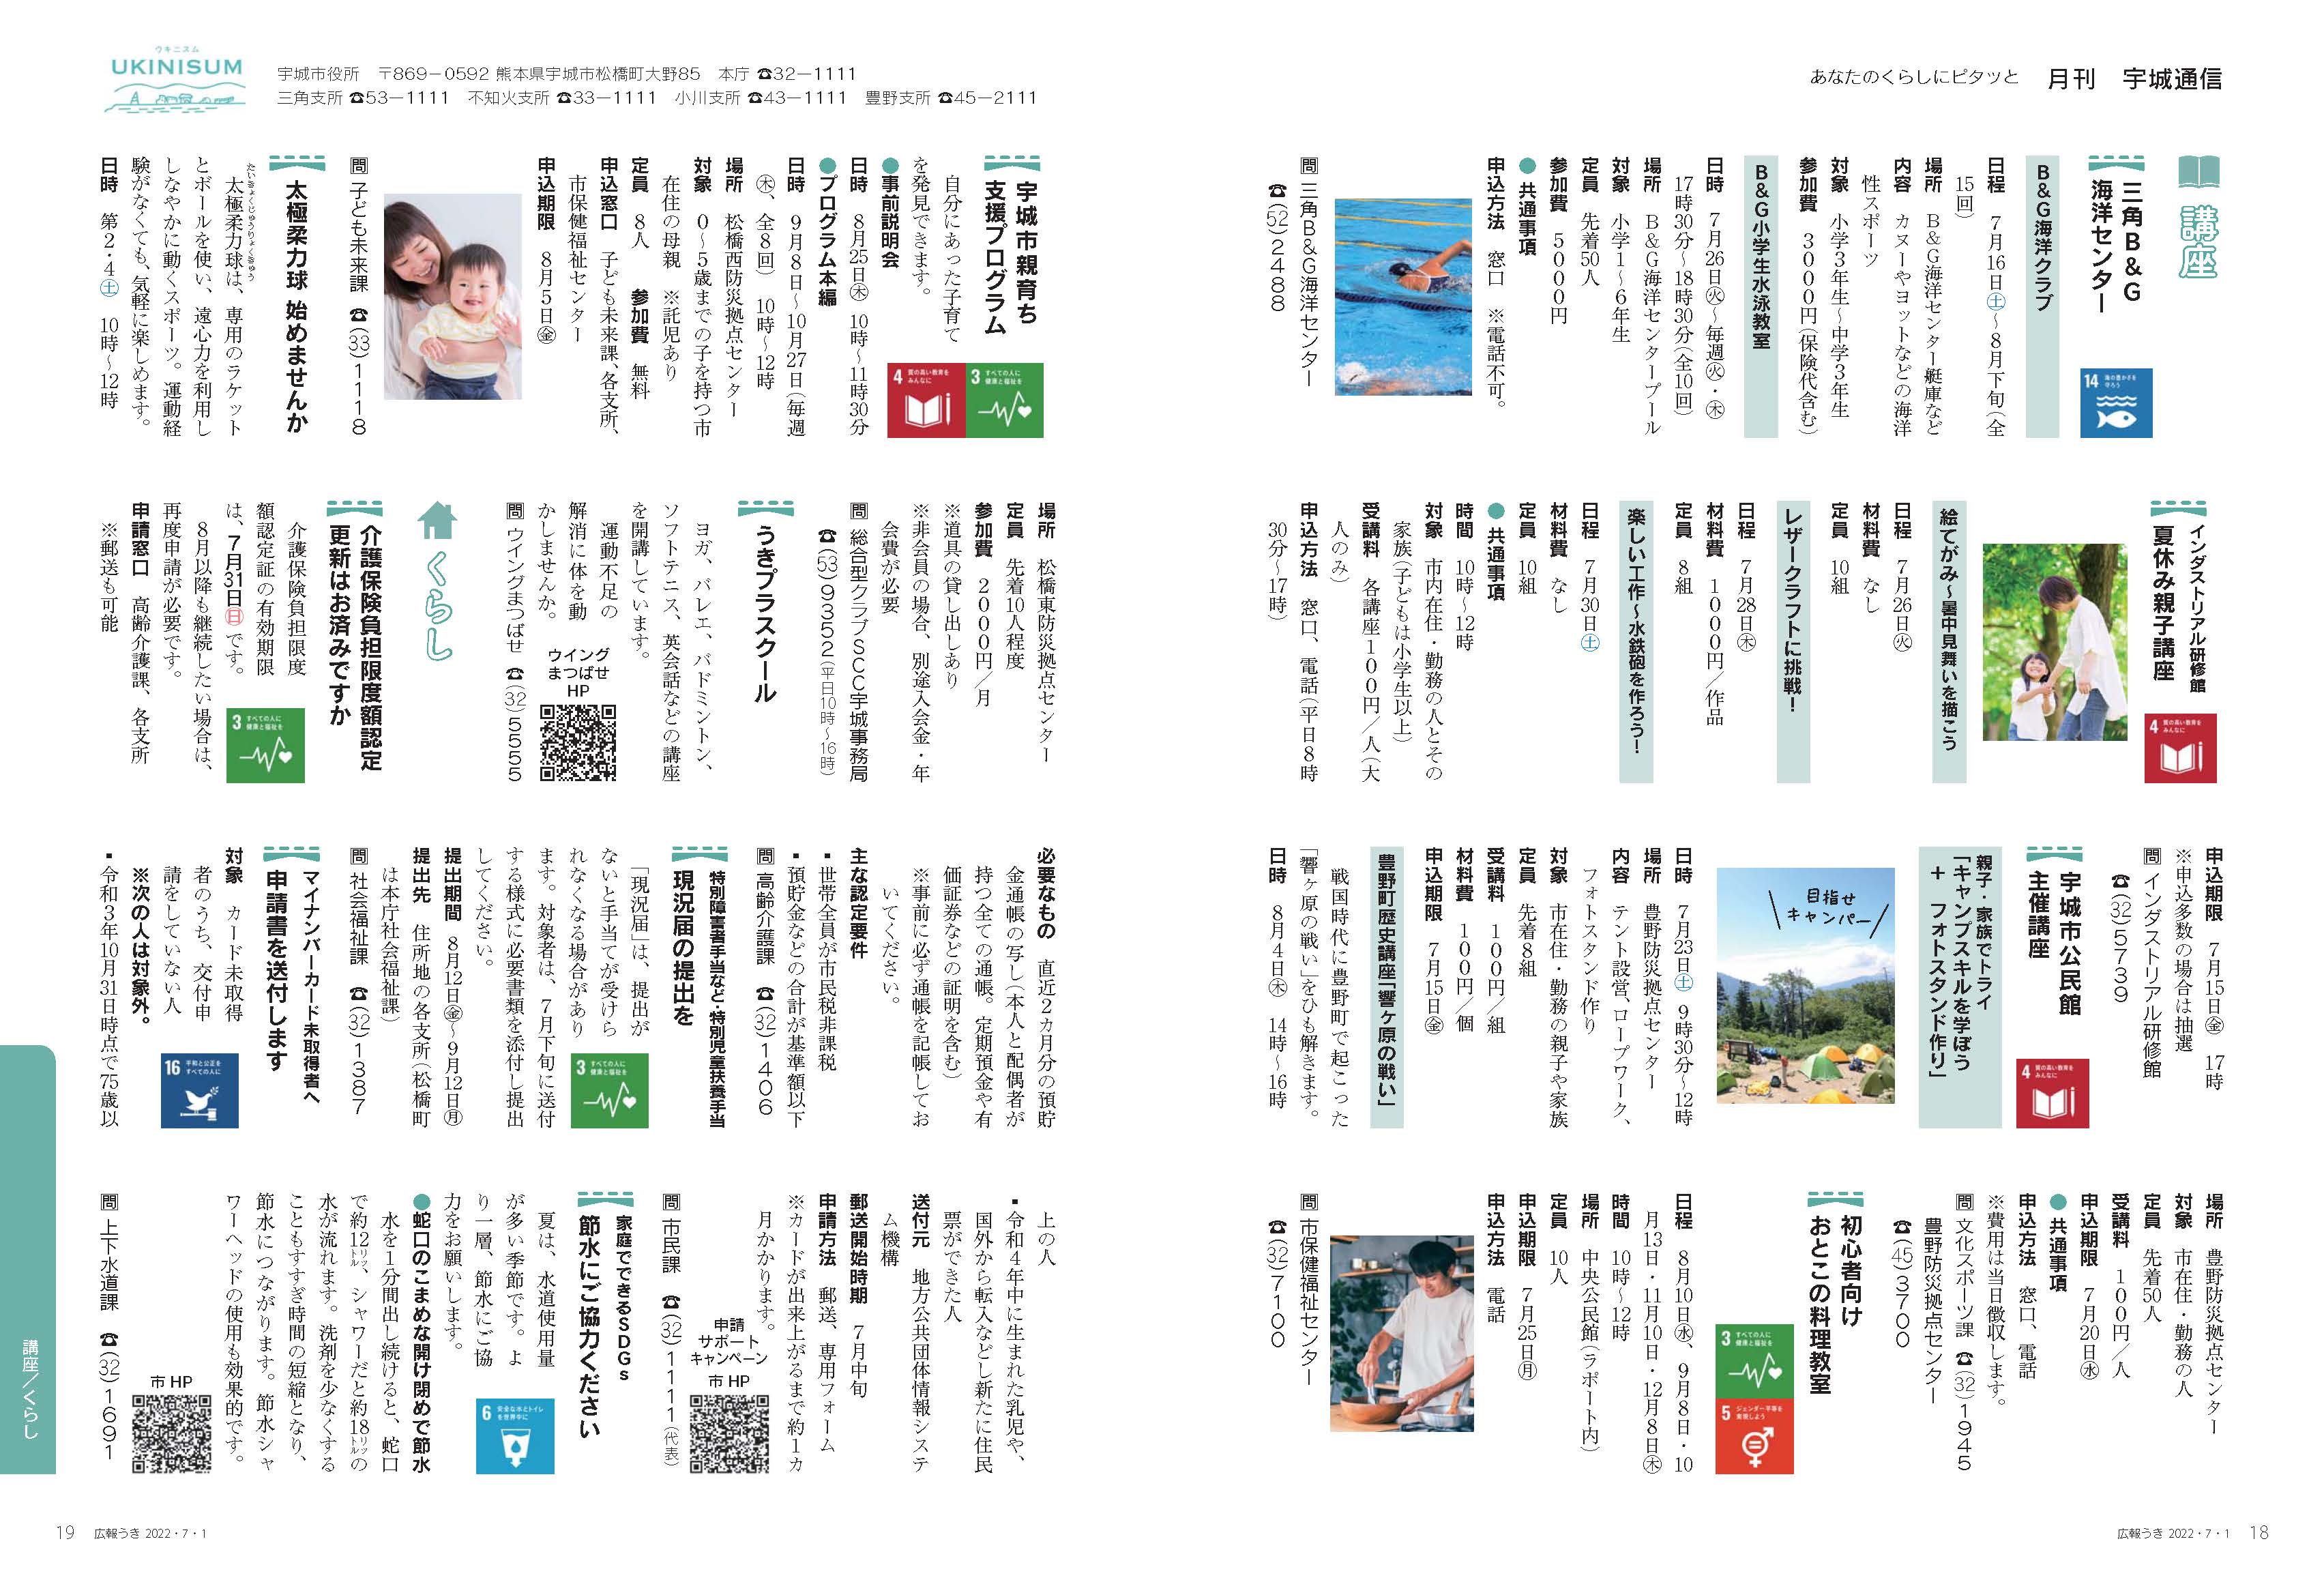 P18、P19　あなたのくらしにピタッと　月刊 宇城通信の画像、詳細はPDFファイルをご参照ください